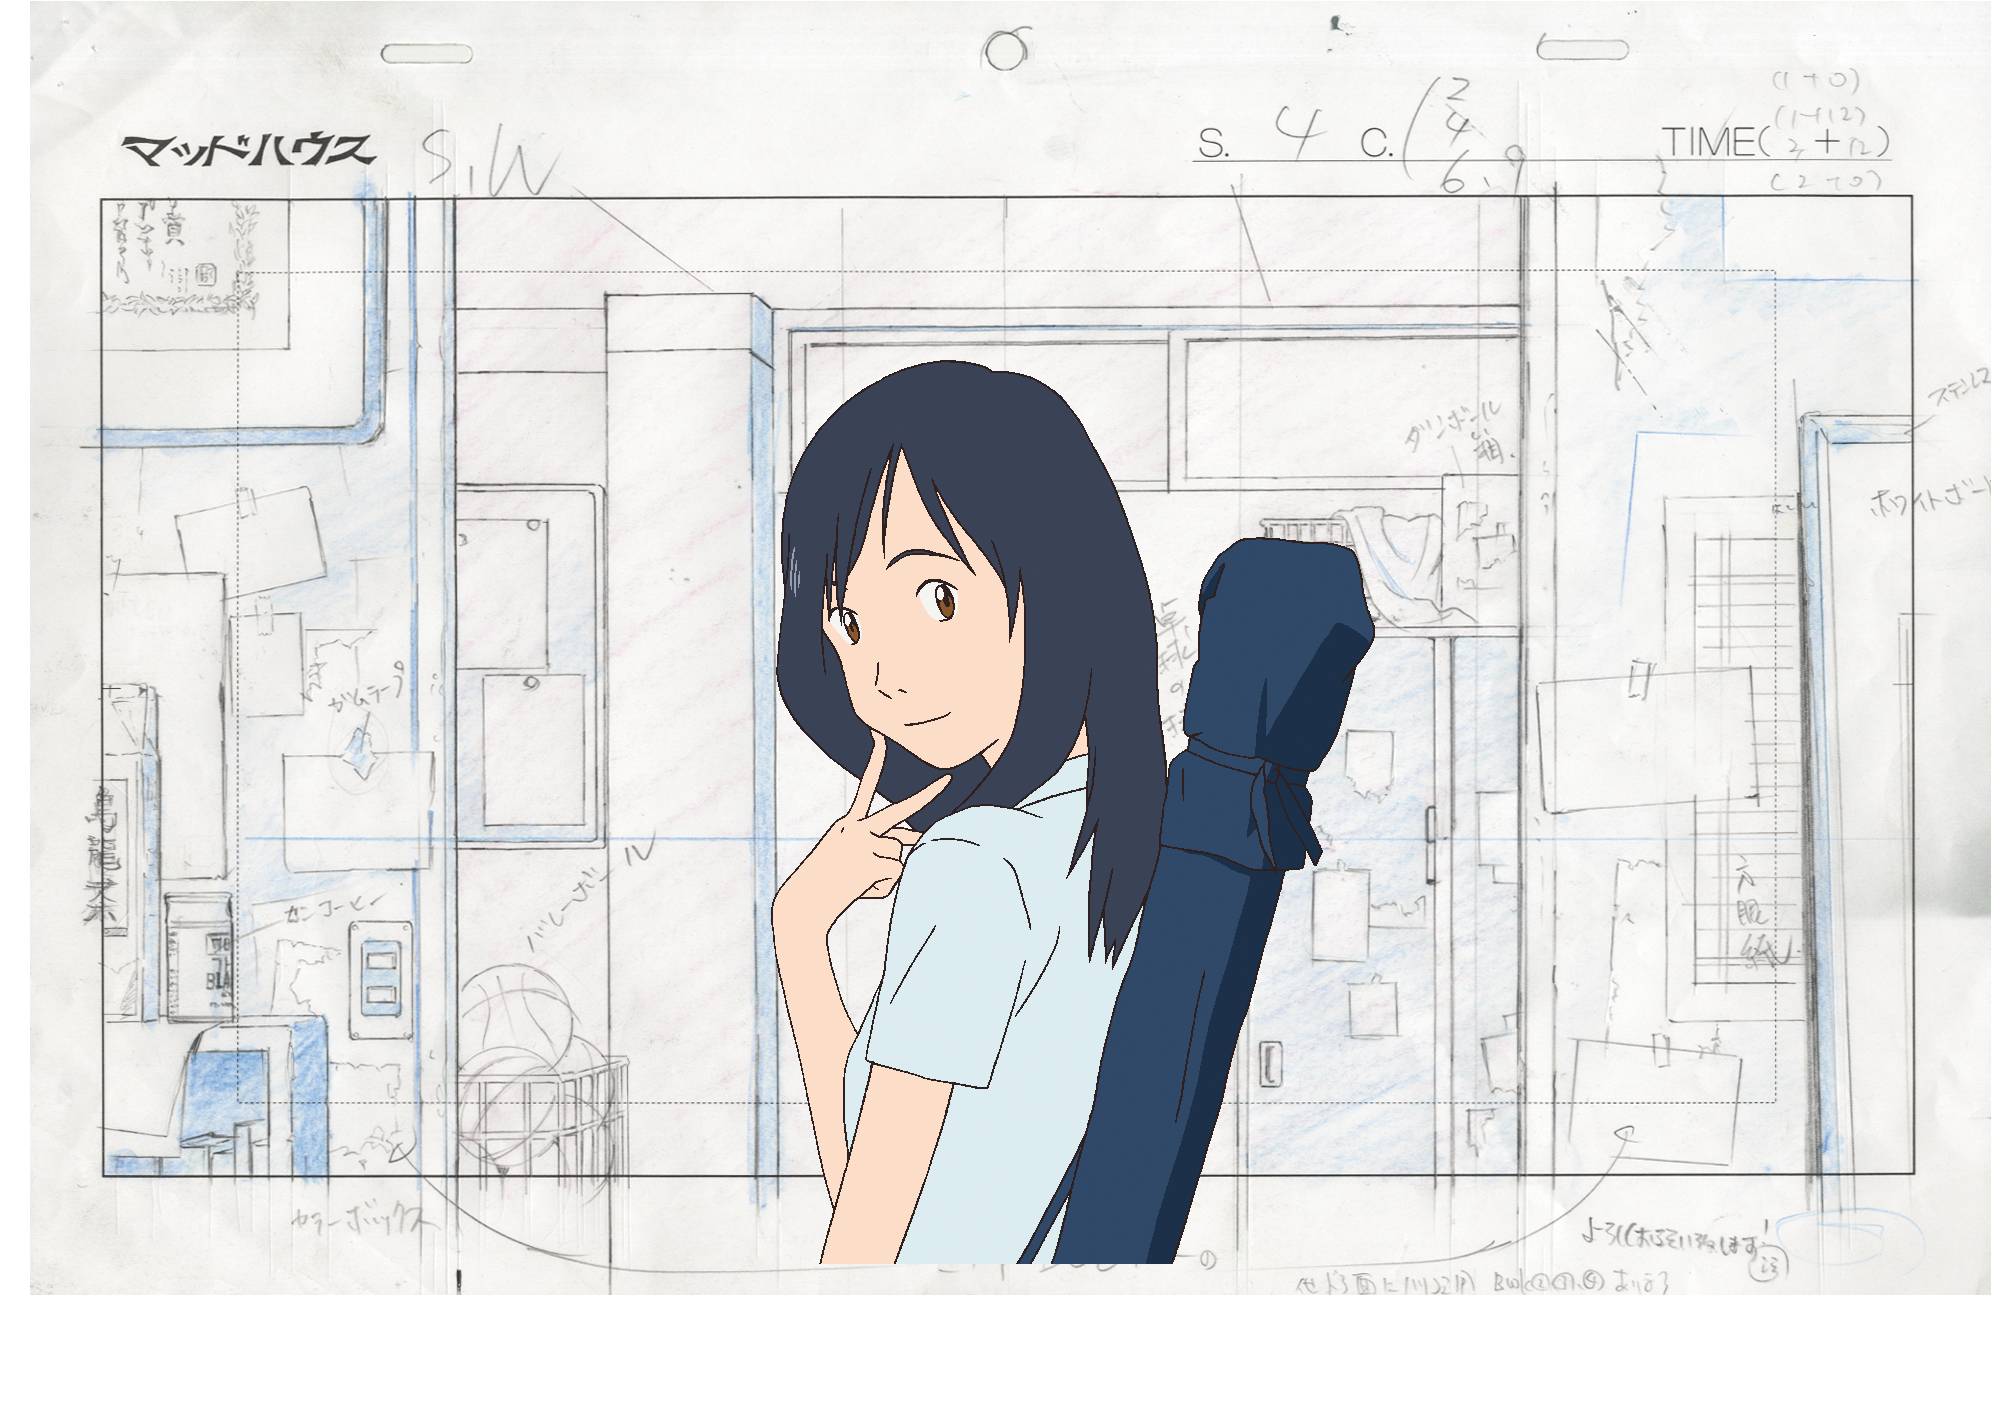 Mamoru Hosoda's Studio Chizu Animates Its 1st Original Anime Ad